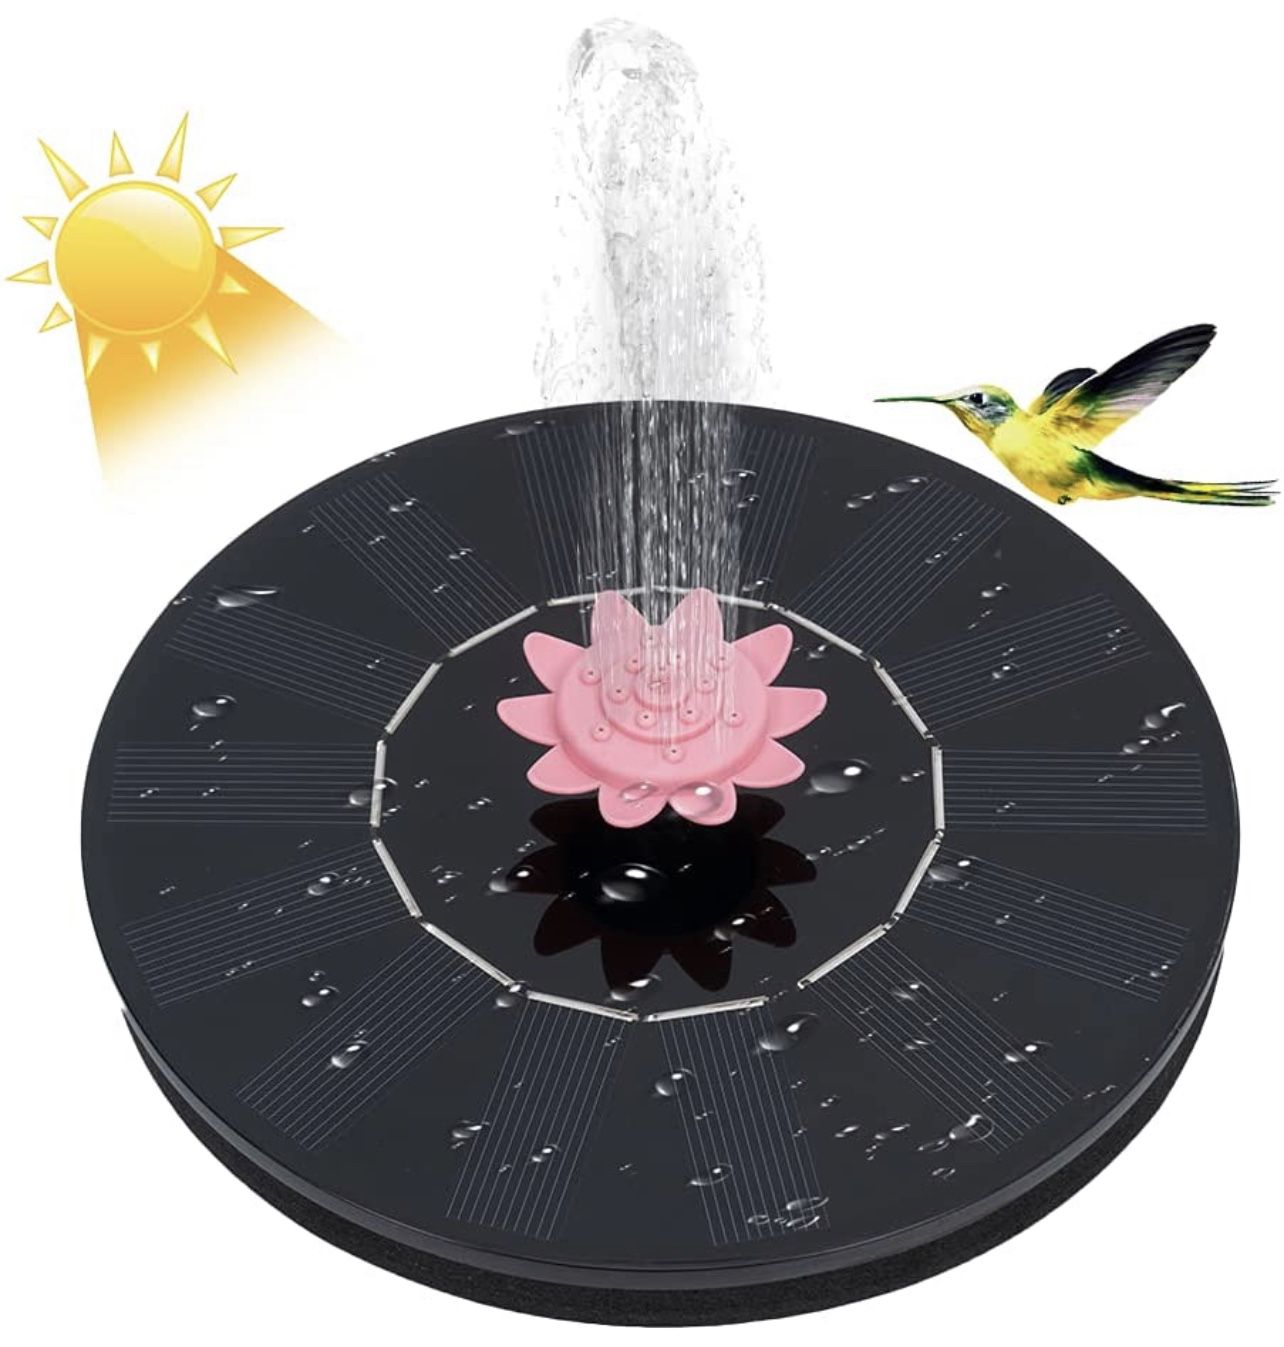  Solar Fountain